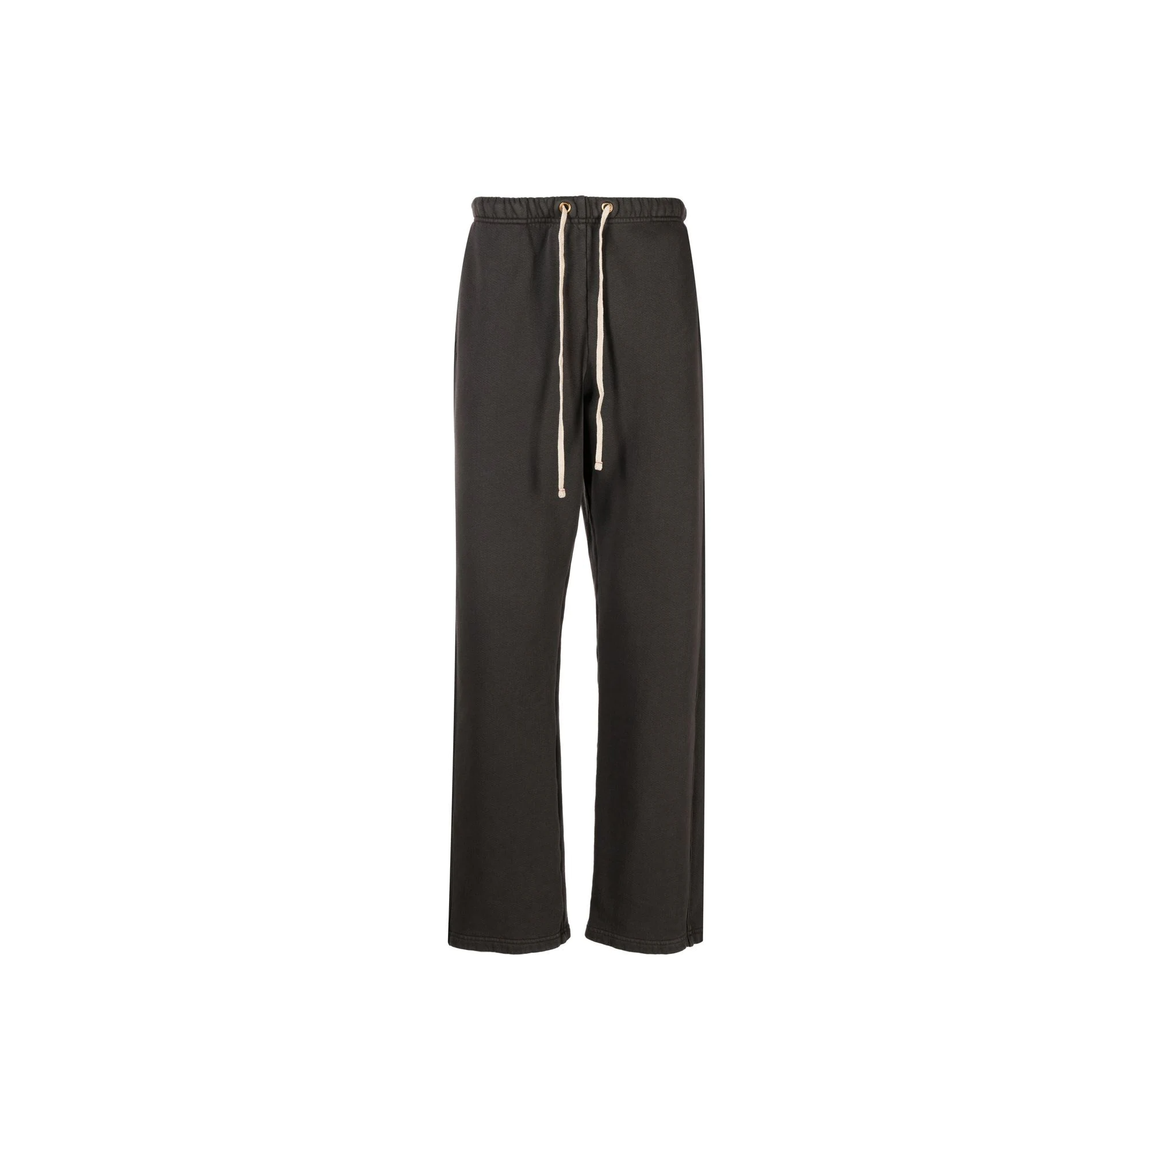 Les Tien Relaxed Pant (Vintage Black) - Les Tien Relaxed Pant (Vintage Black) - 